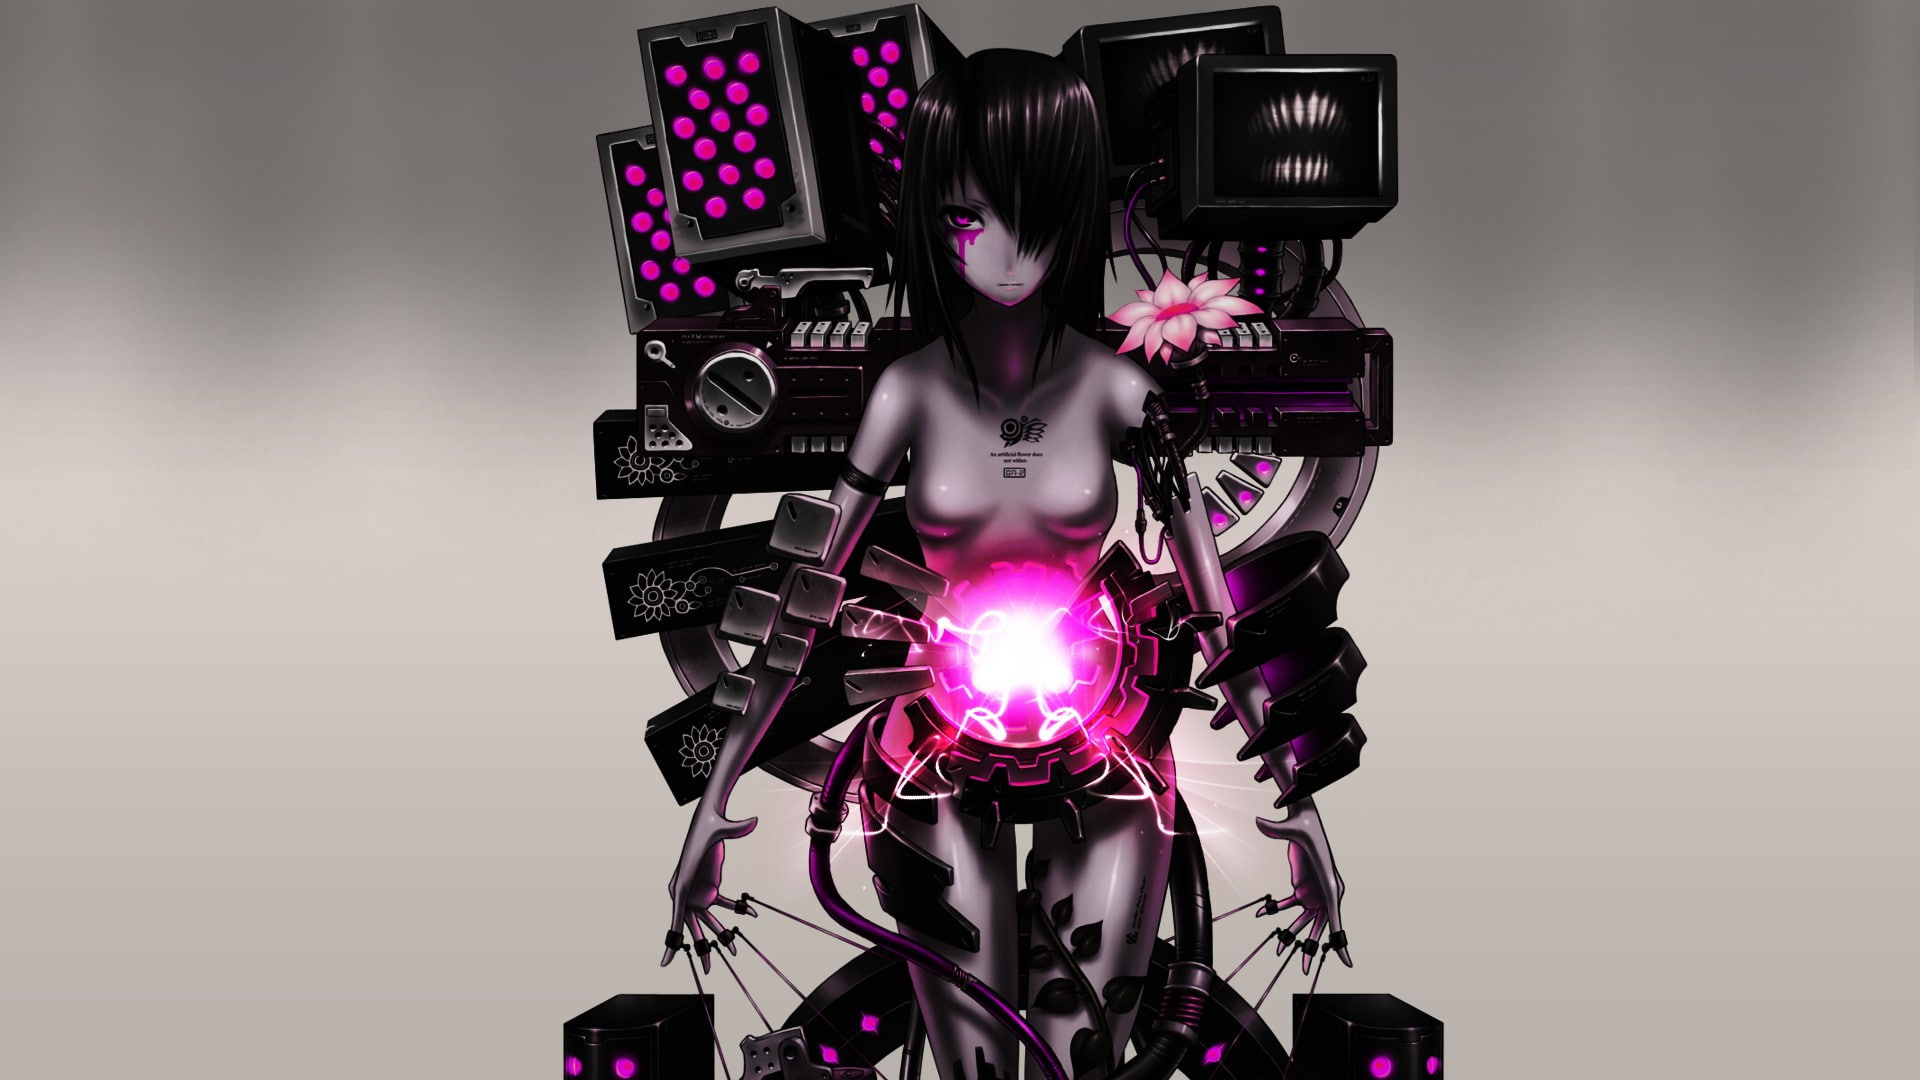 female robot anime character illustration, anime girls, technology